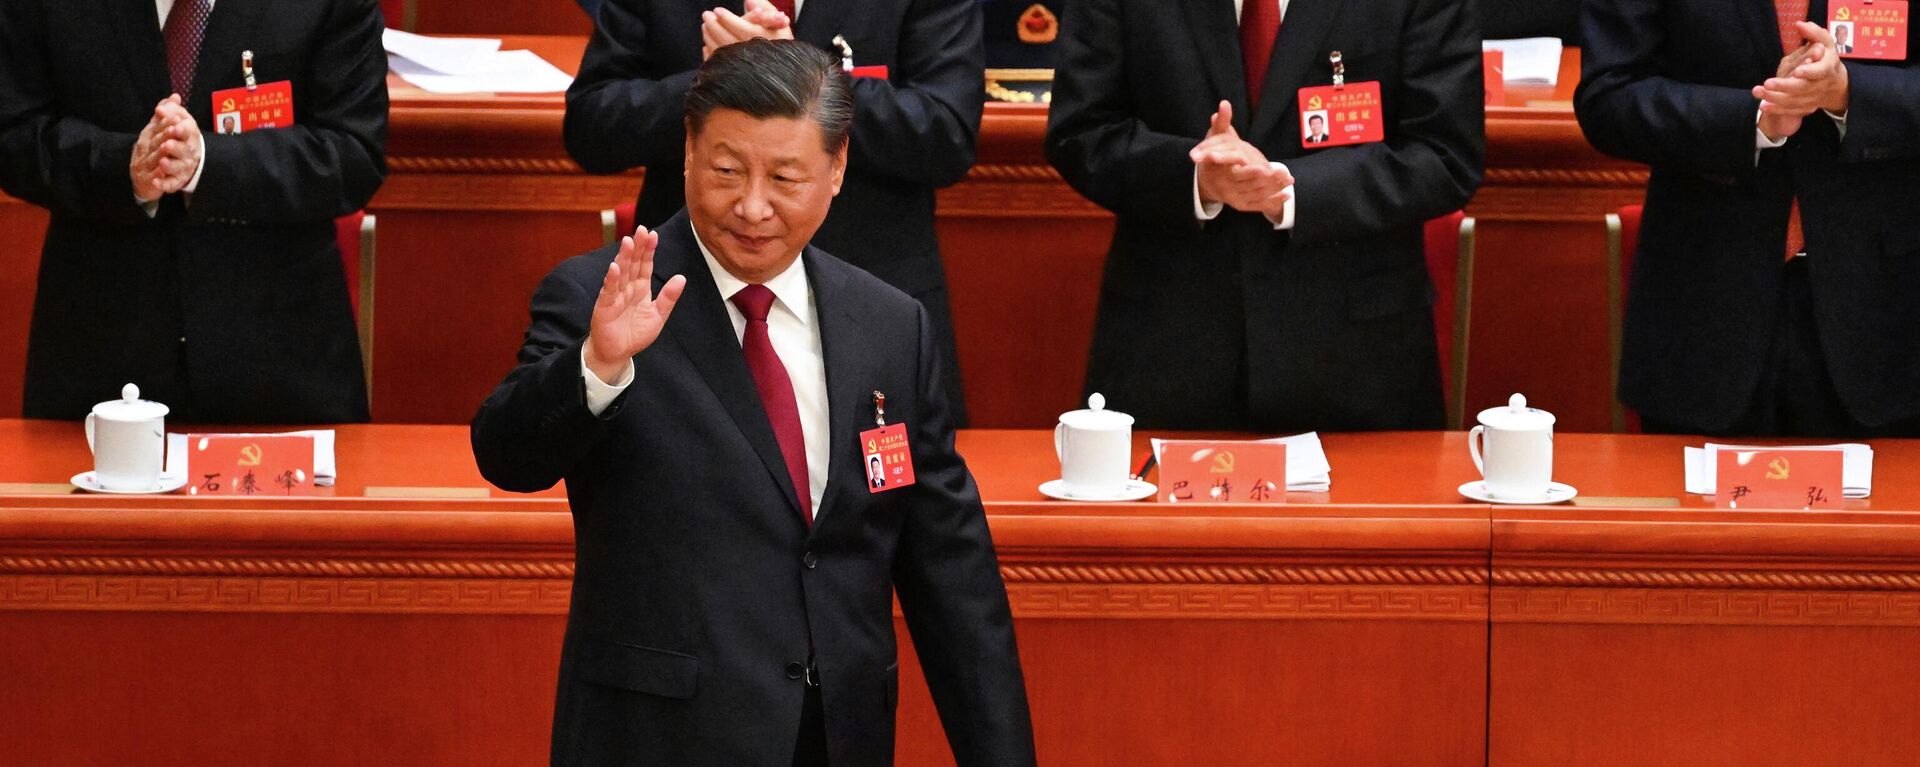 Chủ tịch Trung Quốc Tập Cận Bình khai mạc Đại hội Đảng Cộng sản Trung Quốc lần thứ 20 ở Bắc Kinh - Sputnik Việt Nam, 1920, 18.10.2022